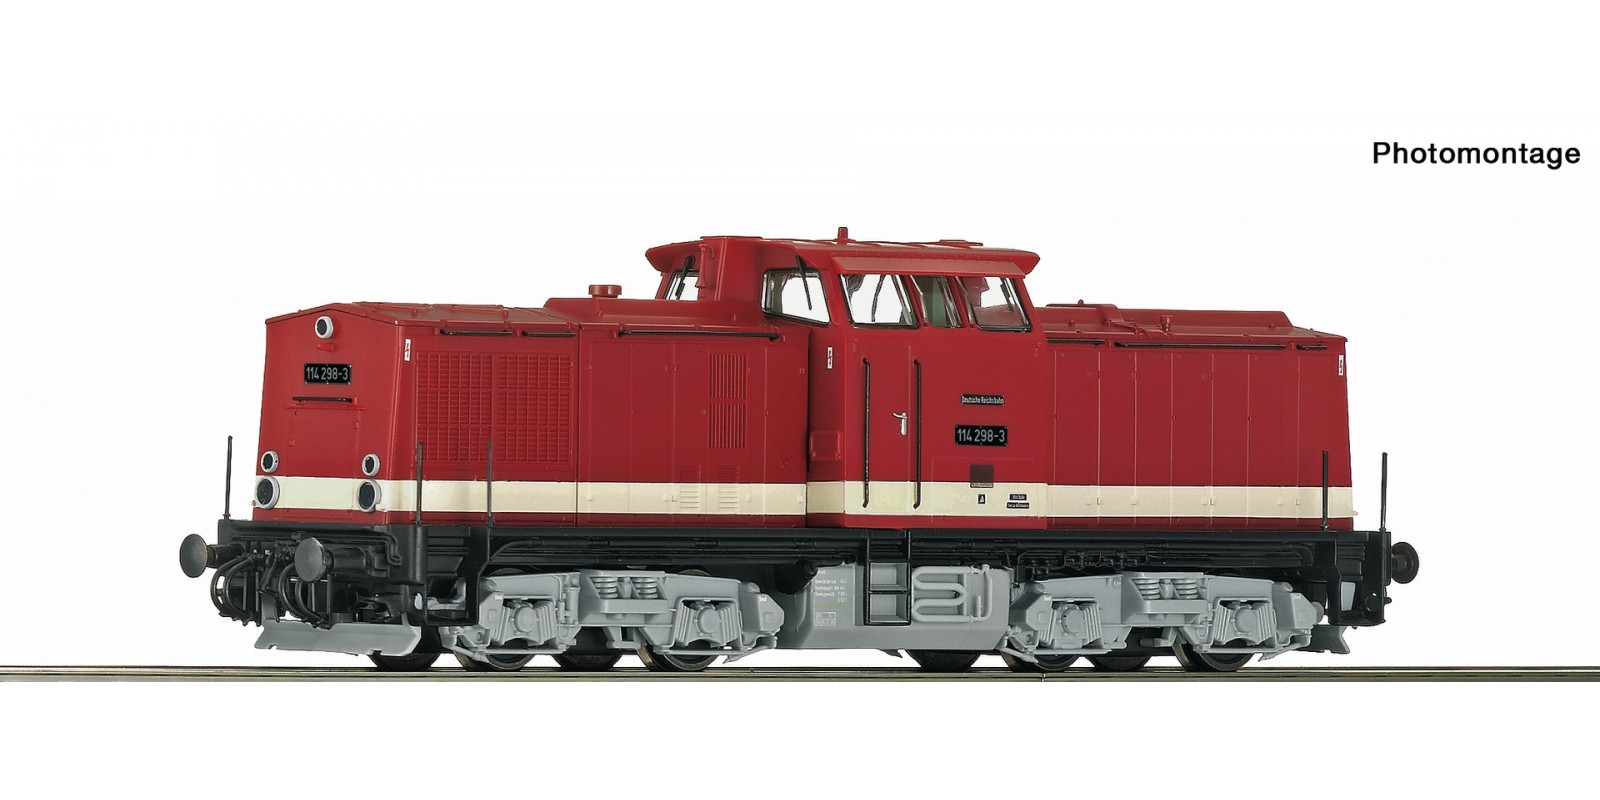 RO70811 Diesel locomotive 114 298-3, DR